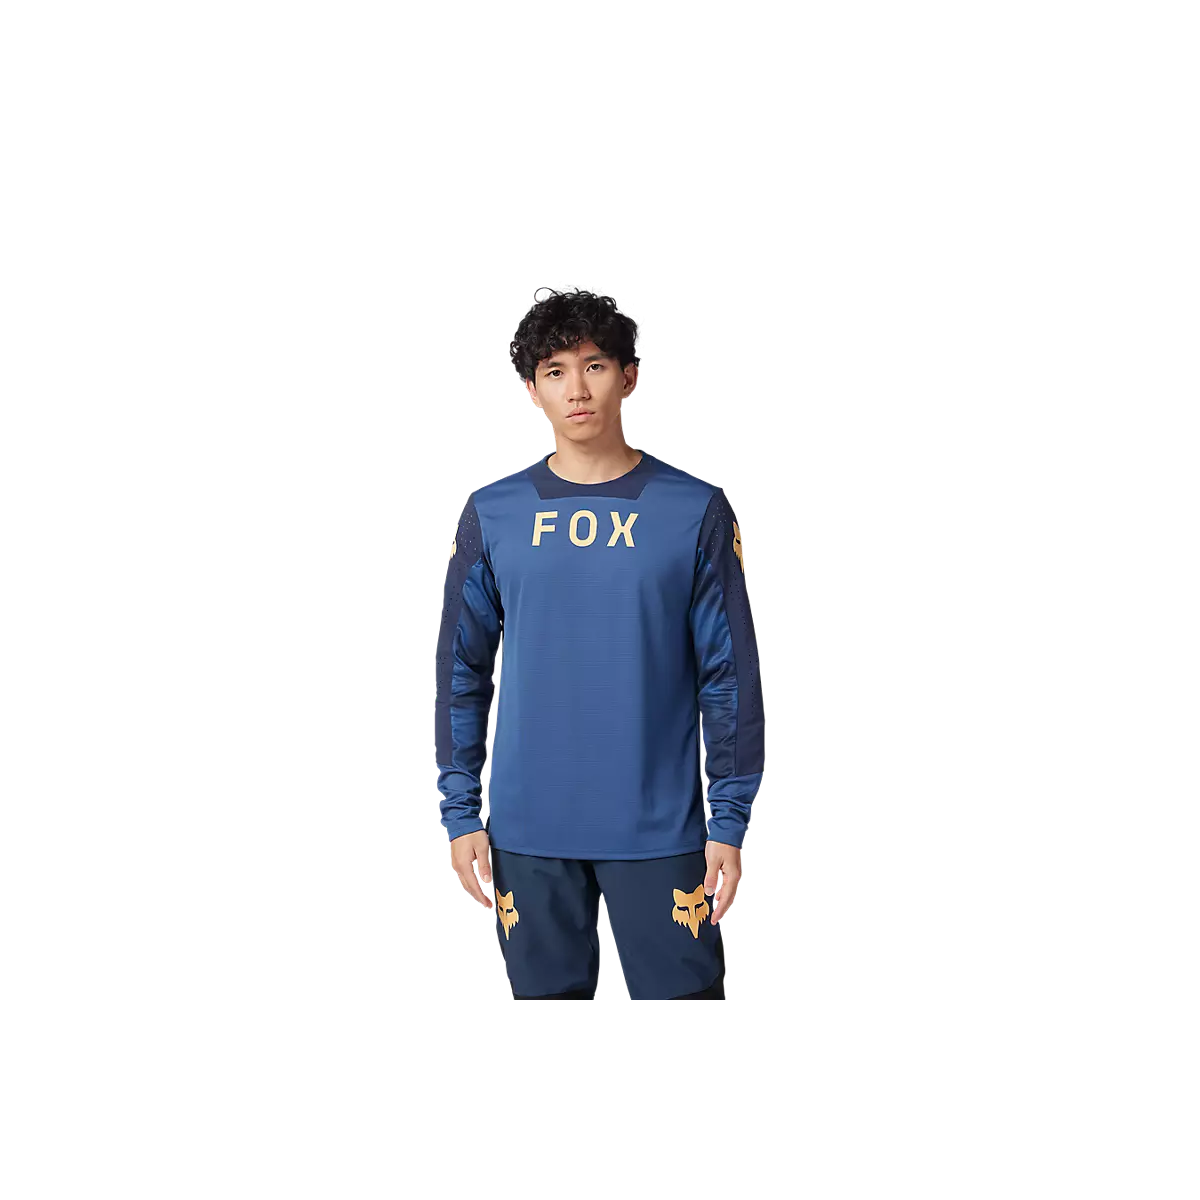 Camiseta manga larga Fox Defend TAUNT para mtb enduro, ebike o descenso|32369